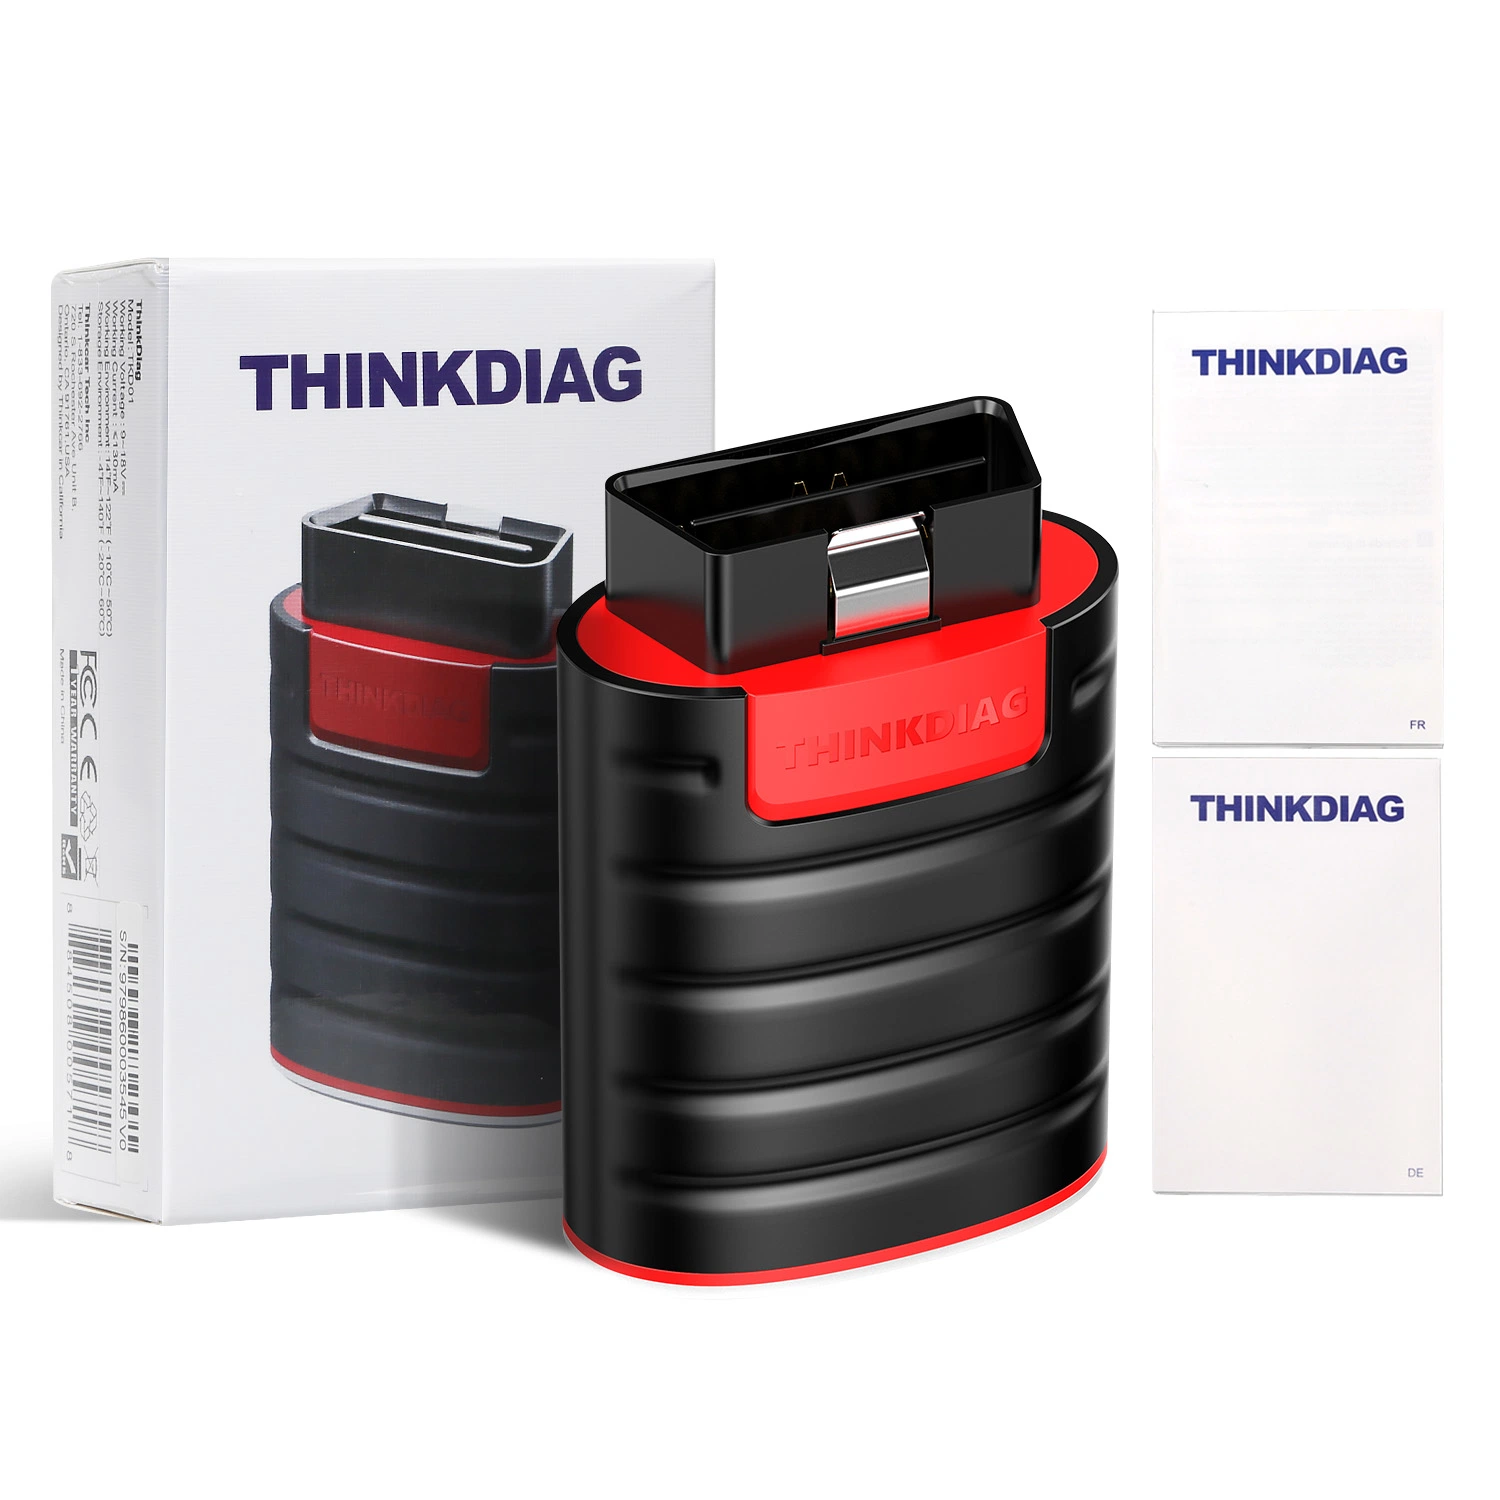 Thinkdiag Sistema completo de la herramienta de diagnóstico OBD2 con licencia de todas las marcas Actualización gratuita para un año potente que el lanzamiento Easydi